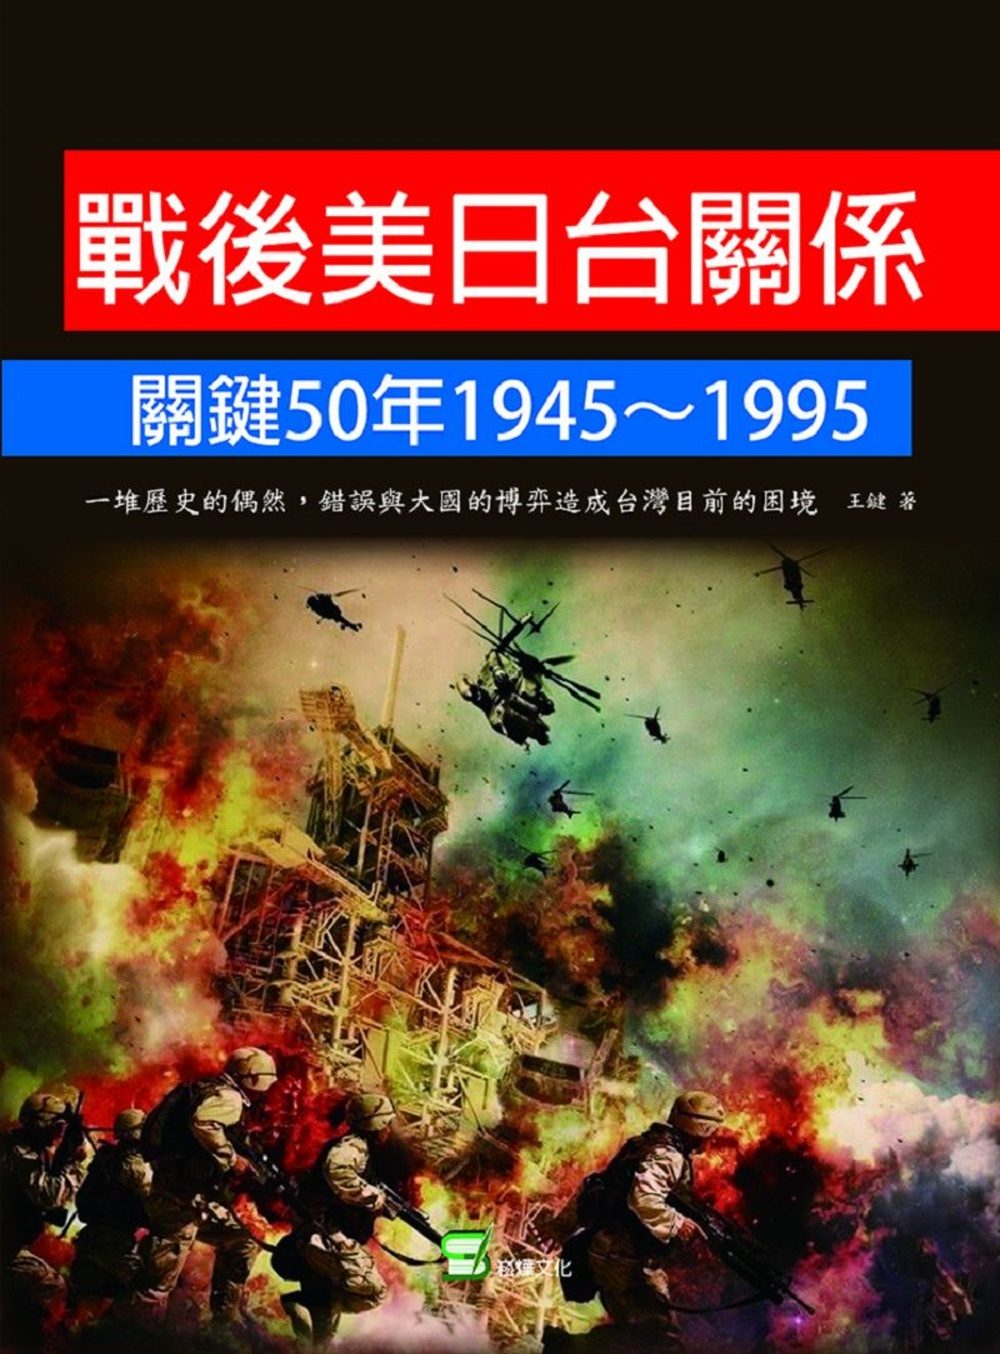 戰後美日台關係關鍵50年1945~1995：一堆歷史的偶然、錯誤與大國的博弈造成台灣目前的困境